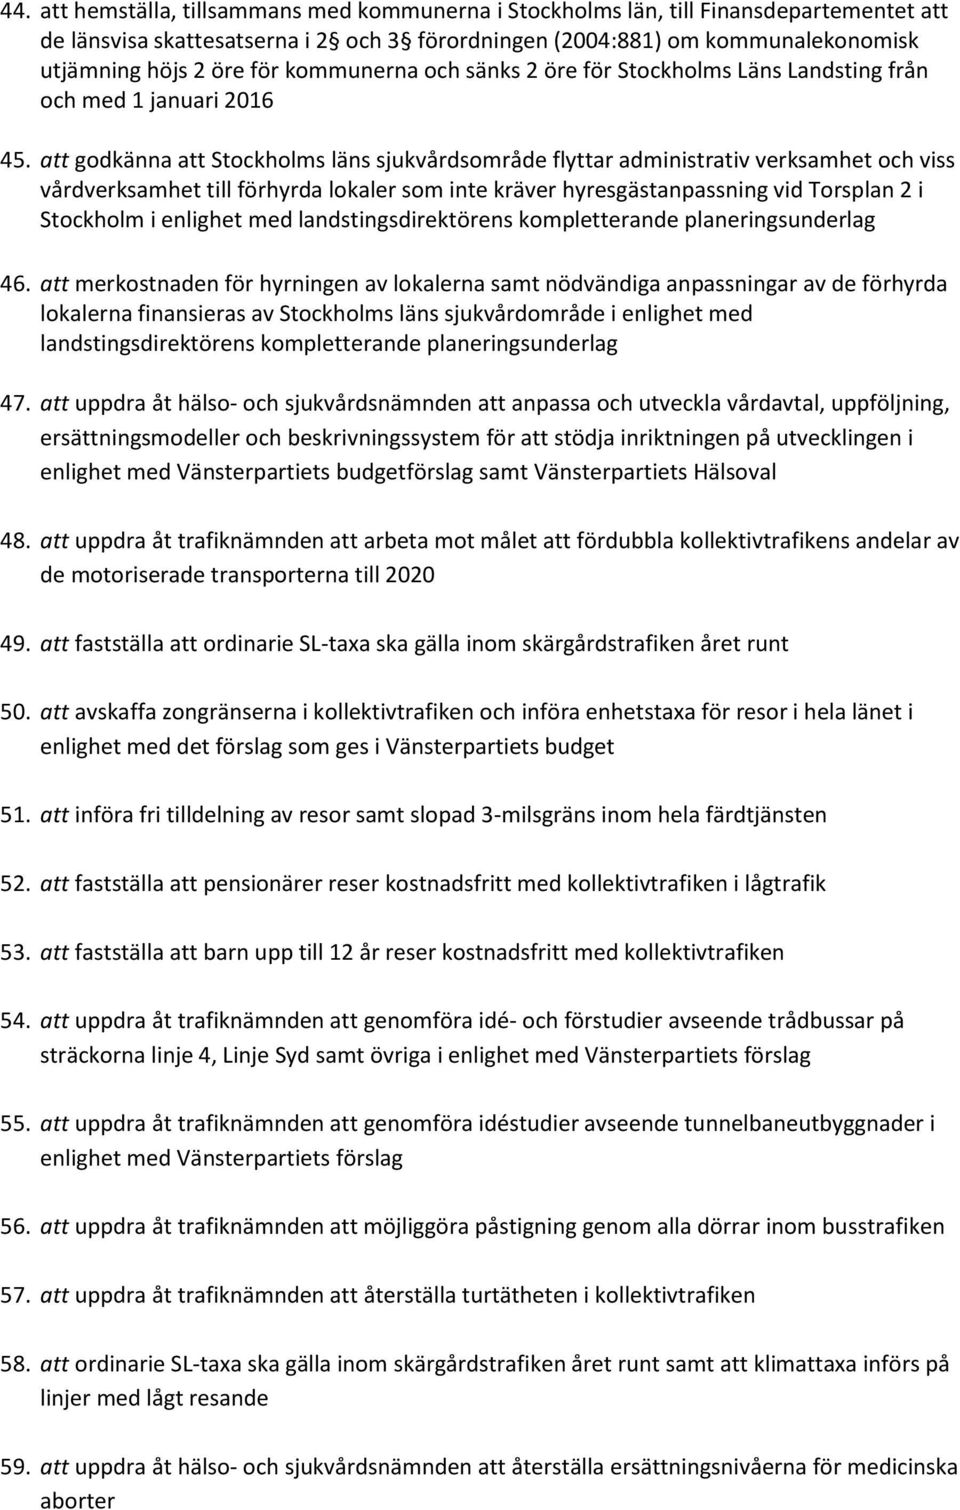 att godkänna att Stockholms läns sjukvårdsområde flyttar administrativ verksamhet och viss vårdverksamhet till förhyrda lokaler som inte kräver hyresgästanpassning vid Torsplan 2 i Stockholm i